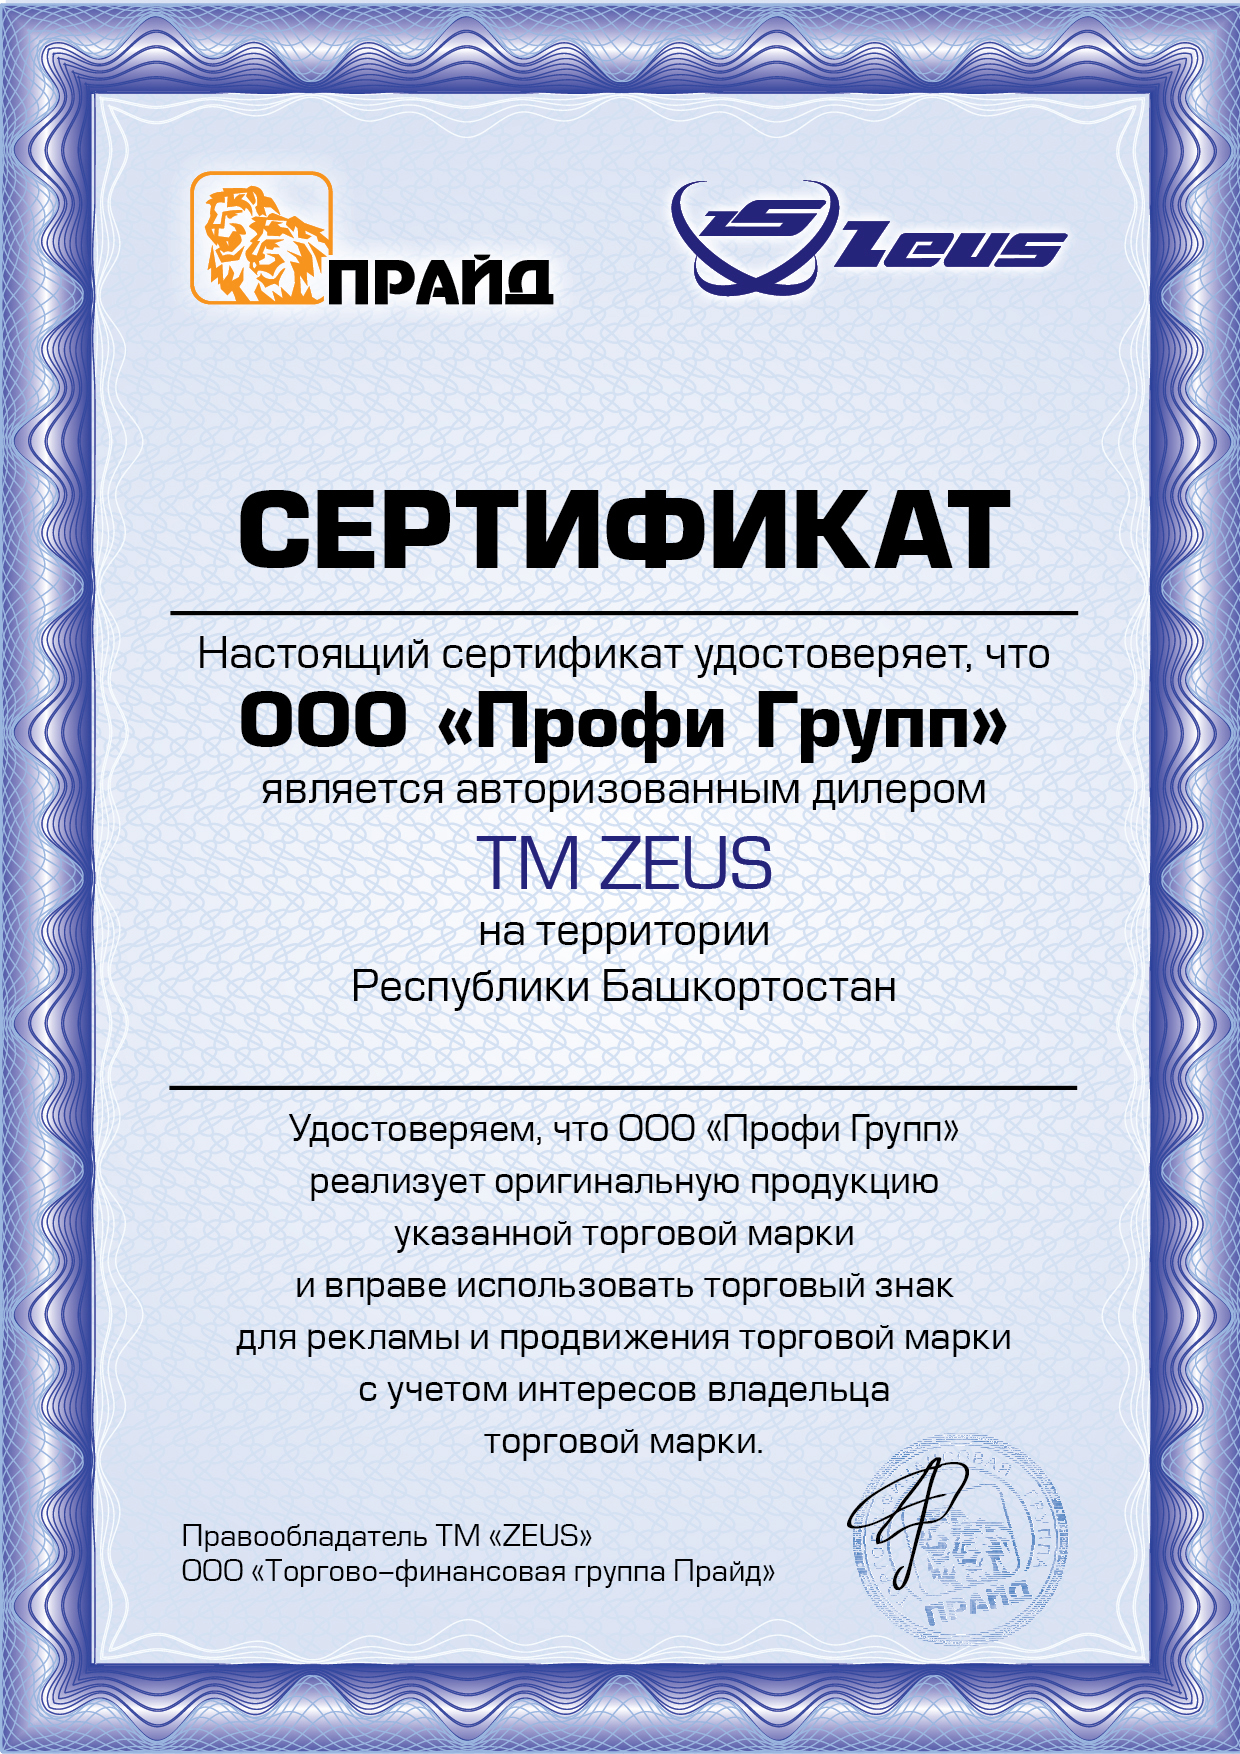 Сертификат Zeus